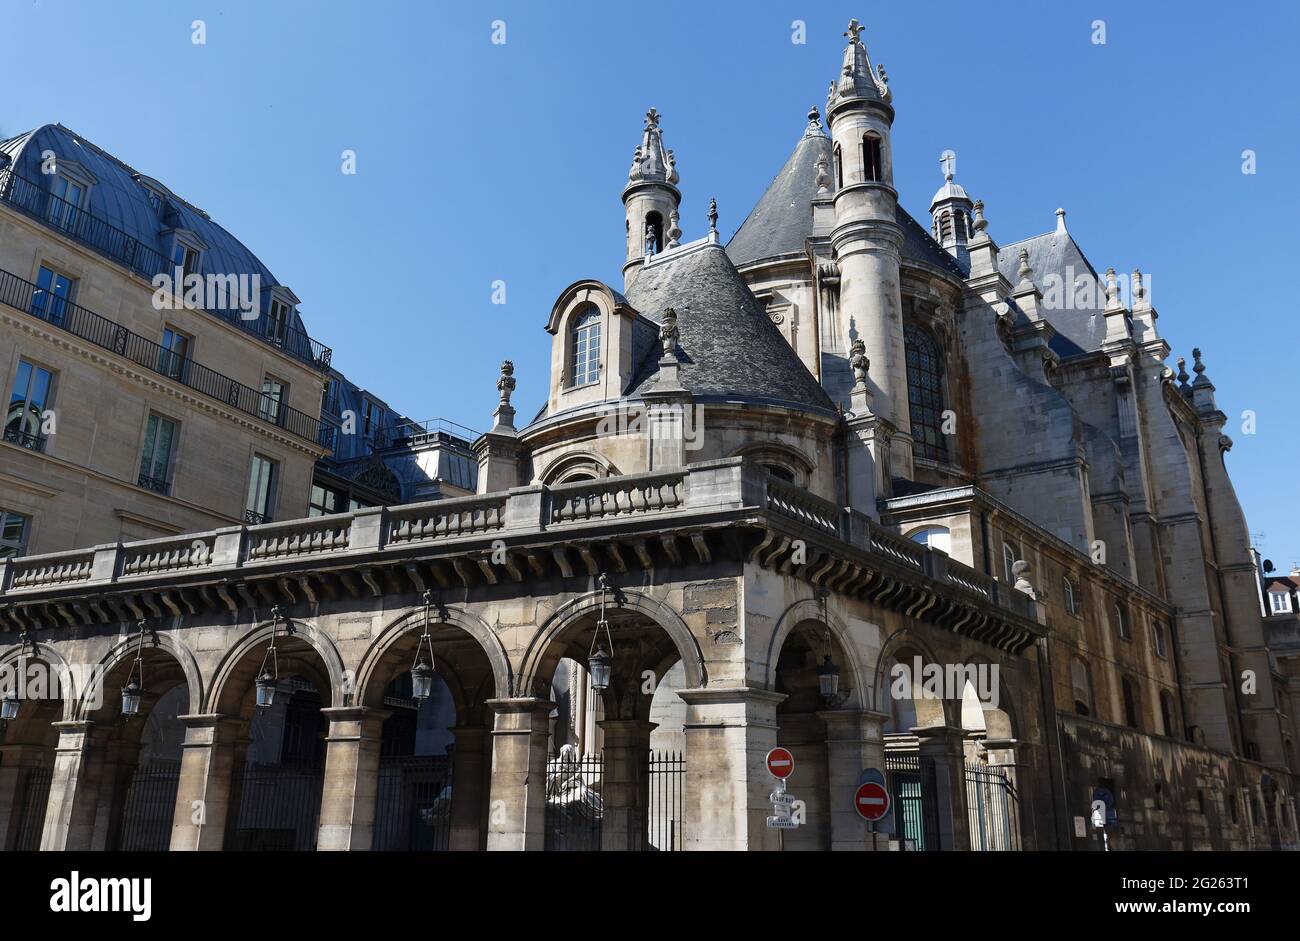 La Chiesa Protestante Oratoire è una storica chiesa protestante situata in rue Saint-Honore nel 1 ° distretto di Parigi, di fronte alla strada Foto Stock